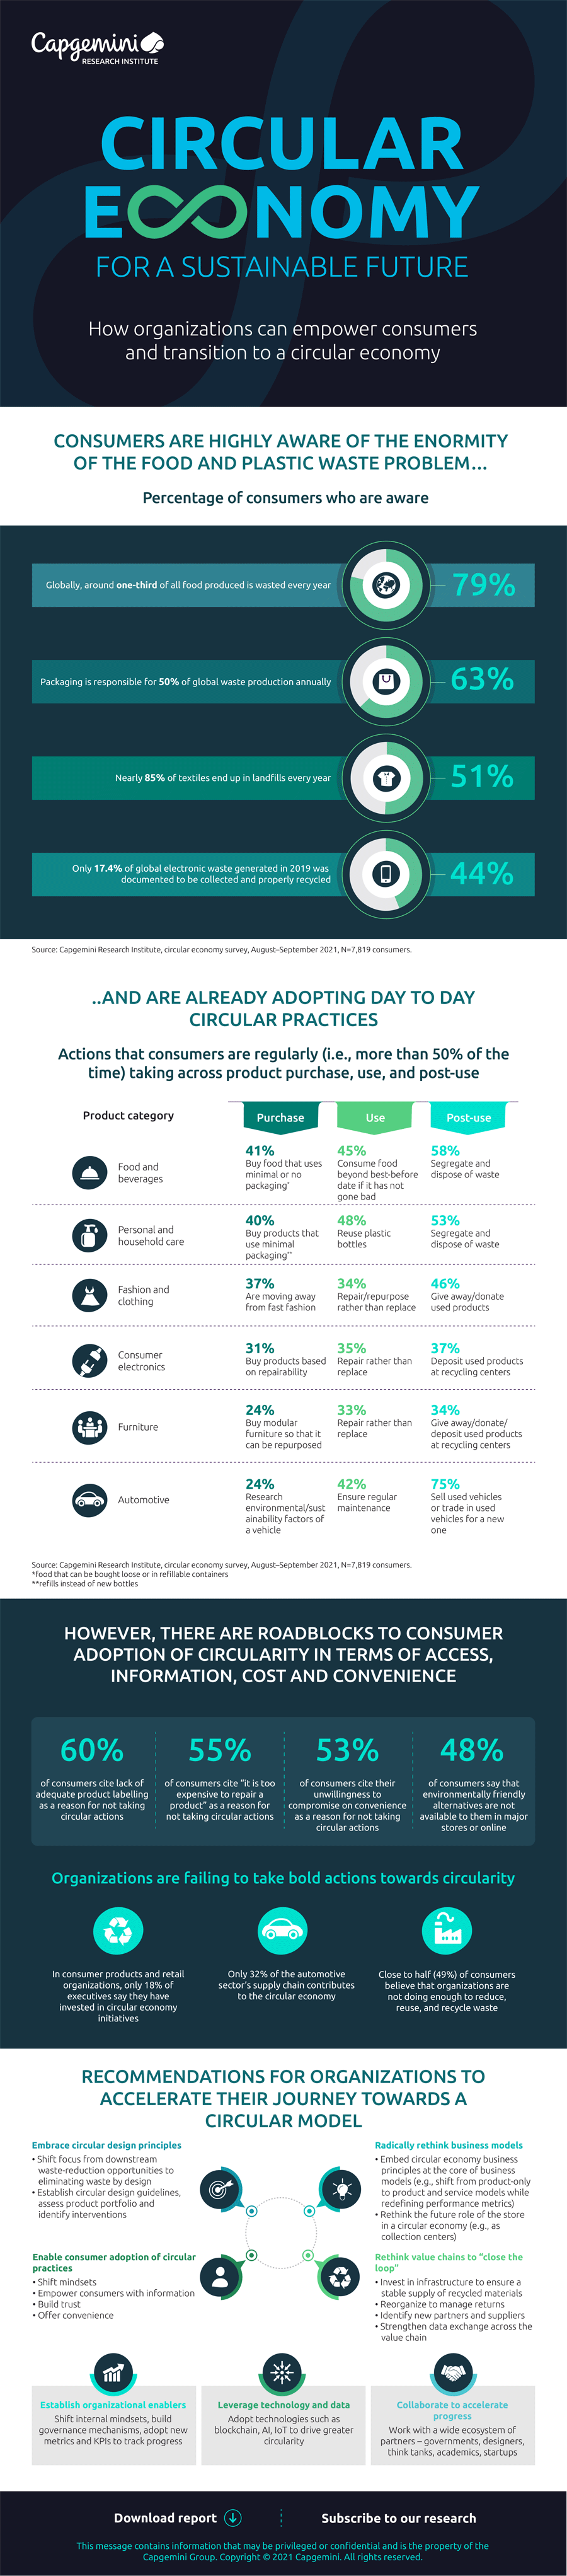 Infografik: Kreislaufwirtschaft für mehr Nachhaltigkeit